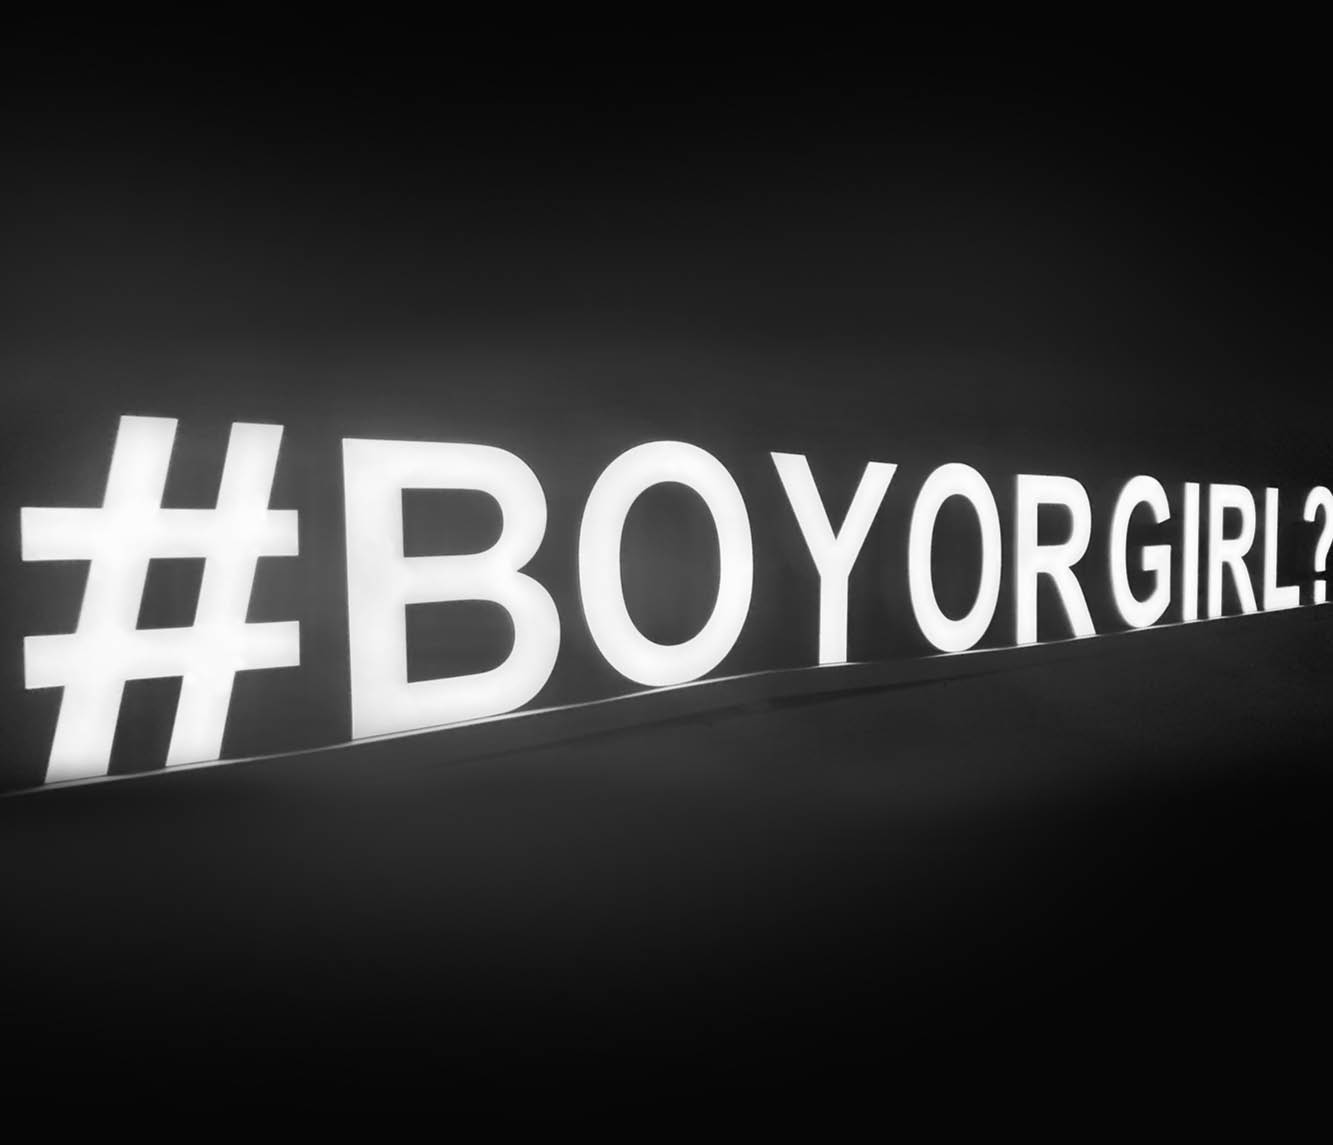 Samostoječe kombinirane LED črke - #BOY OR GIRL in vprašaj